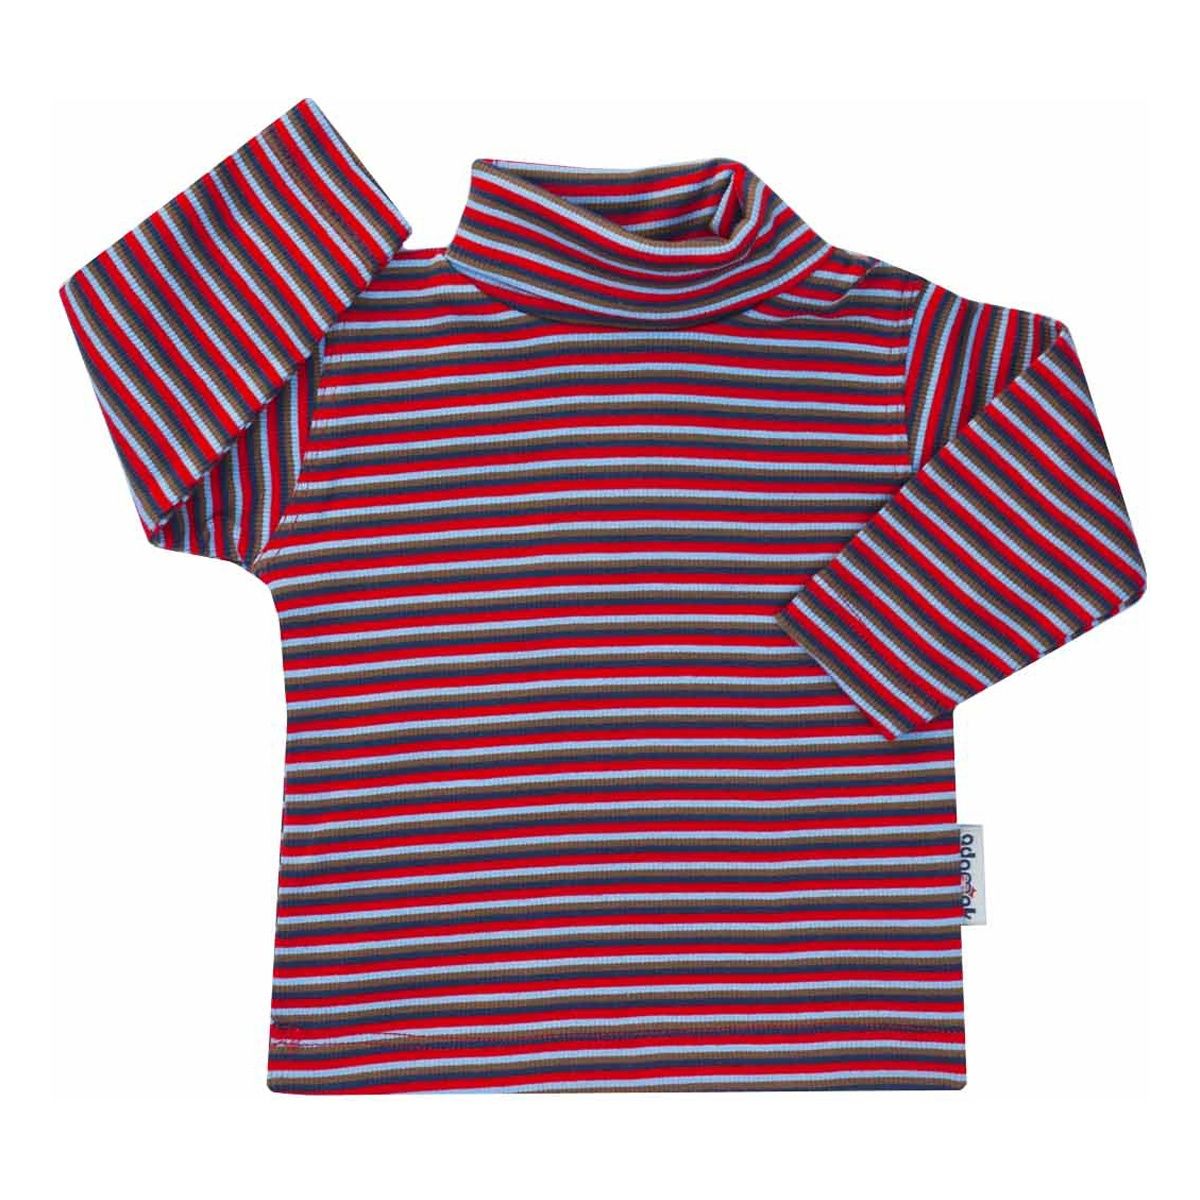 تی شرت آستین بلند نوزاد آدمک طرح راه راه کد 03-144401 -  - 1